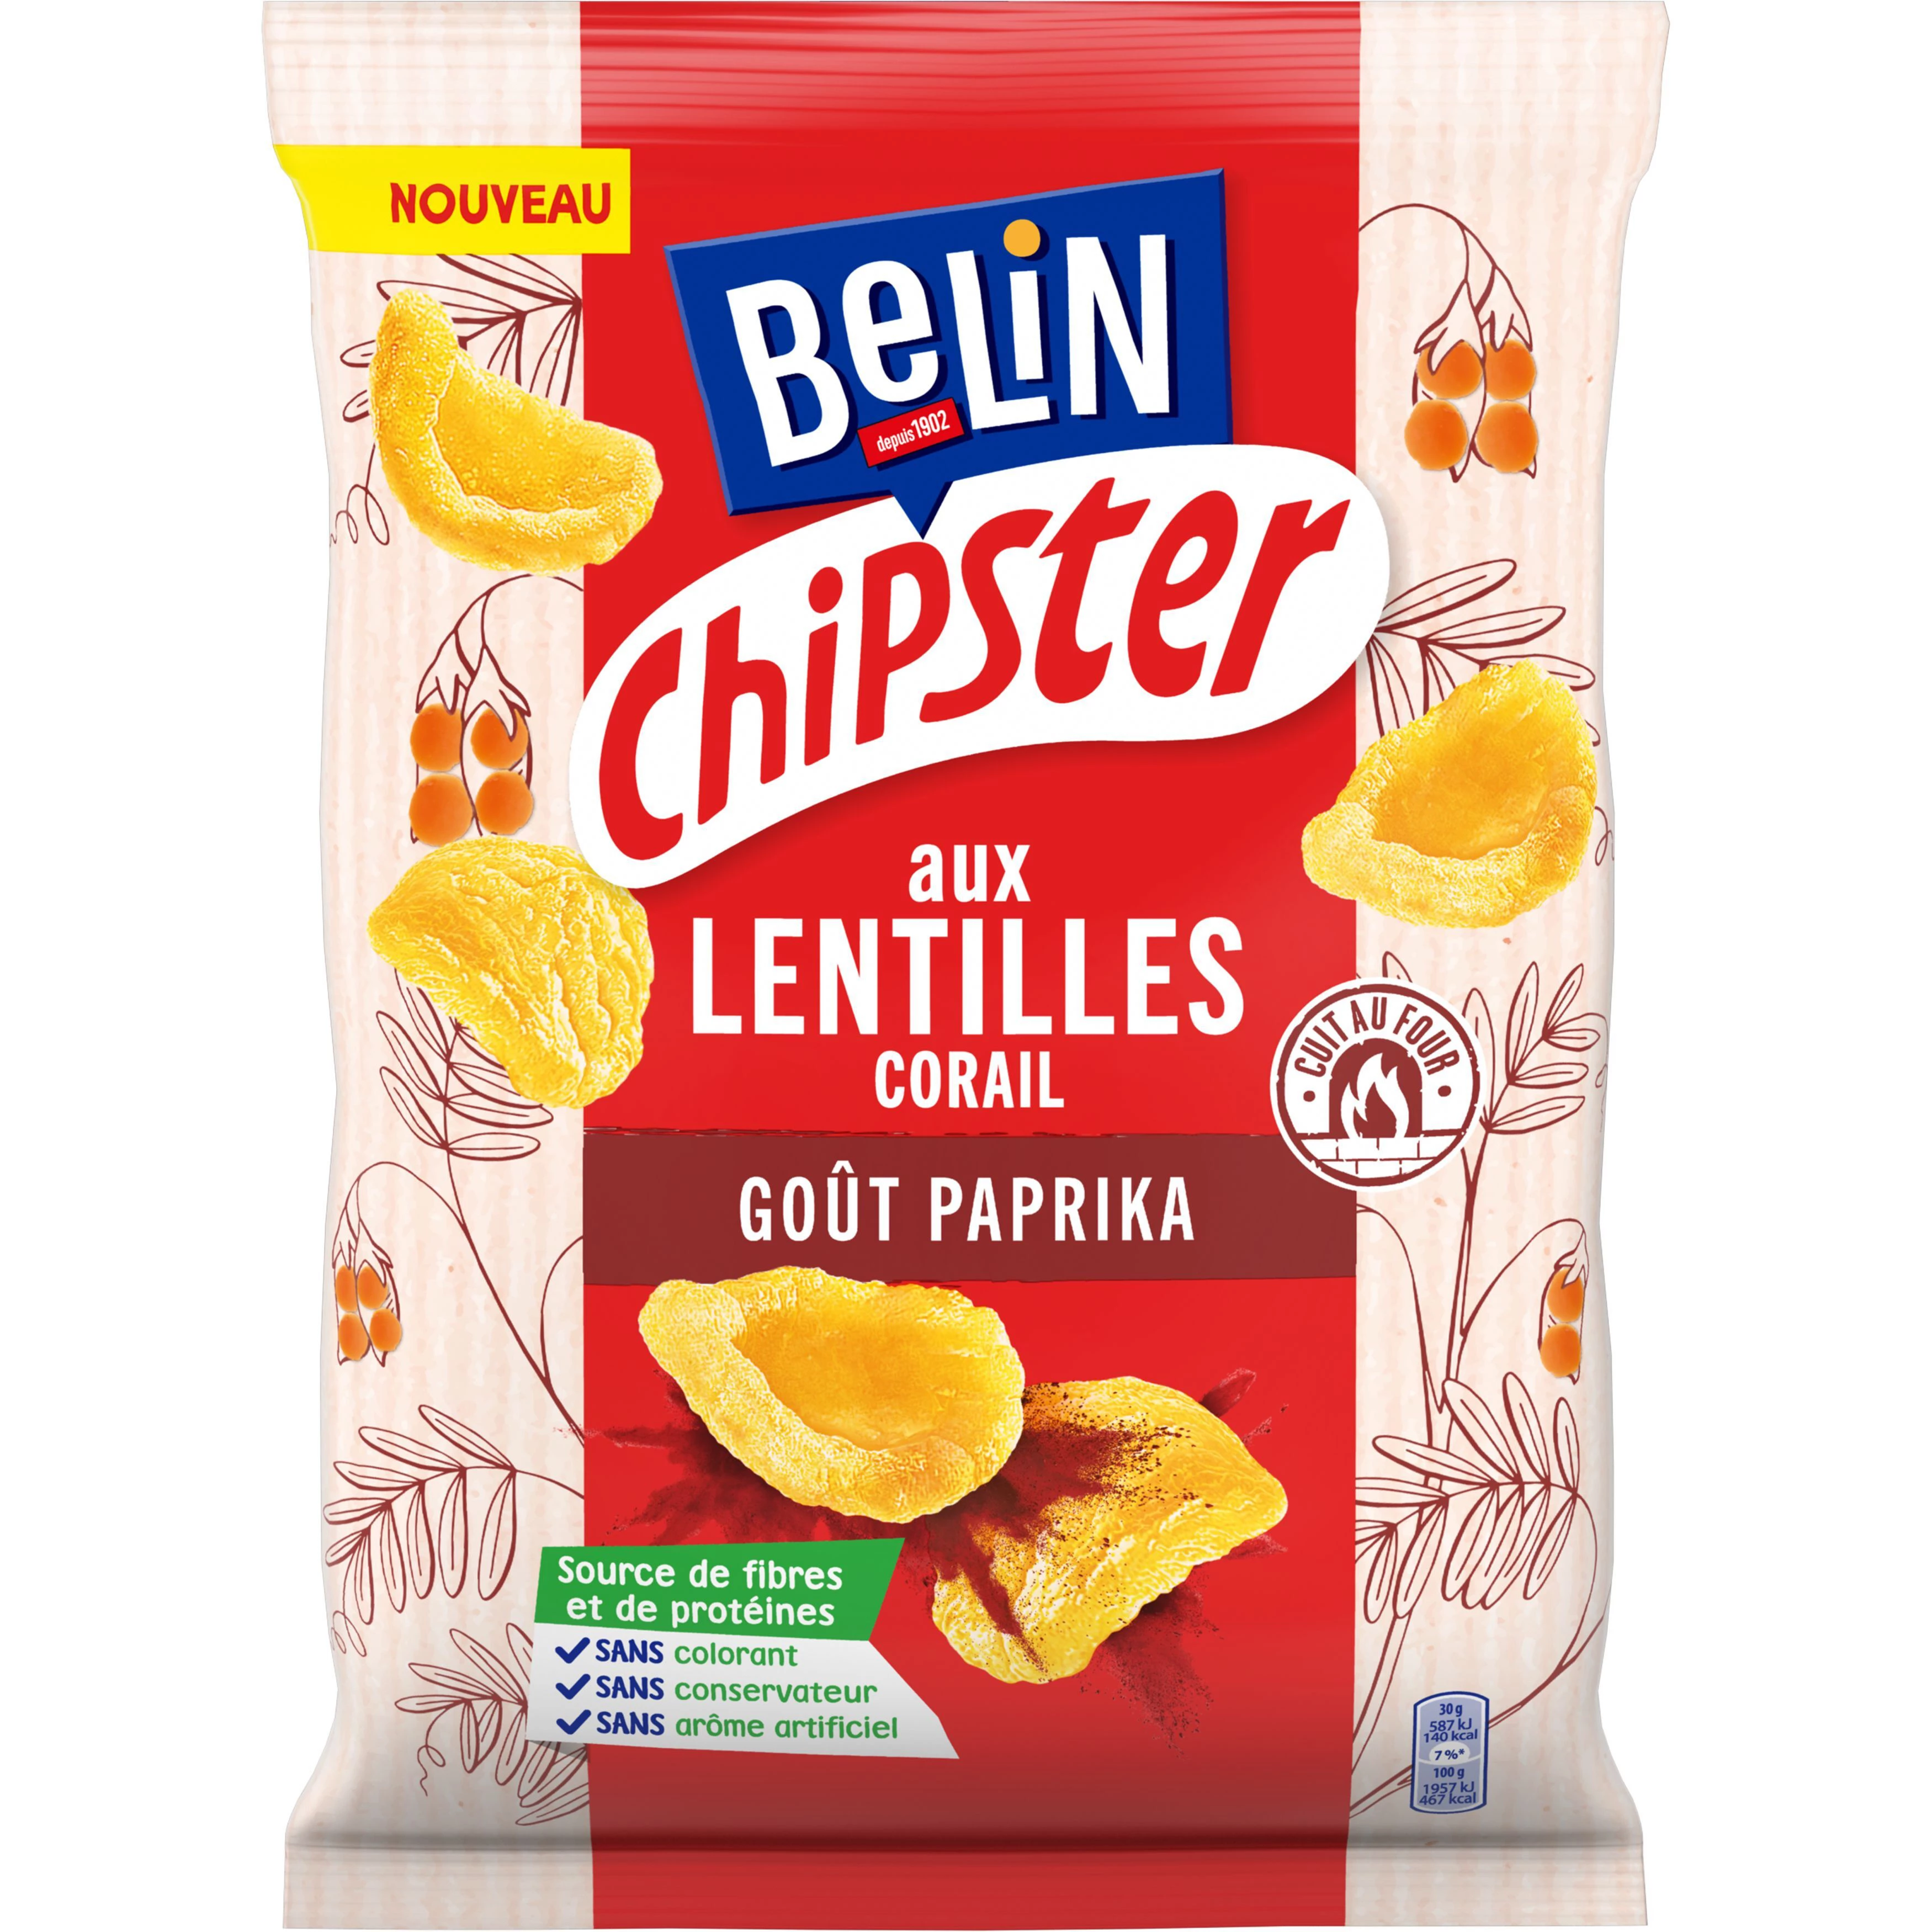 Biscuits Apéritifs aux Lentilles CorAil Goût Paprika Chipster, 80 g   - BELIN